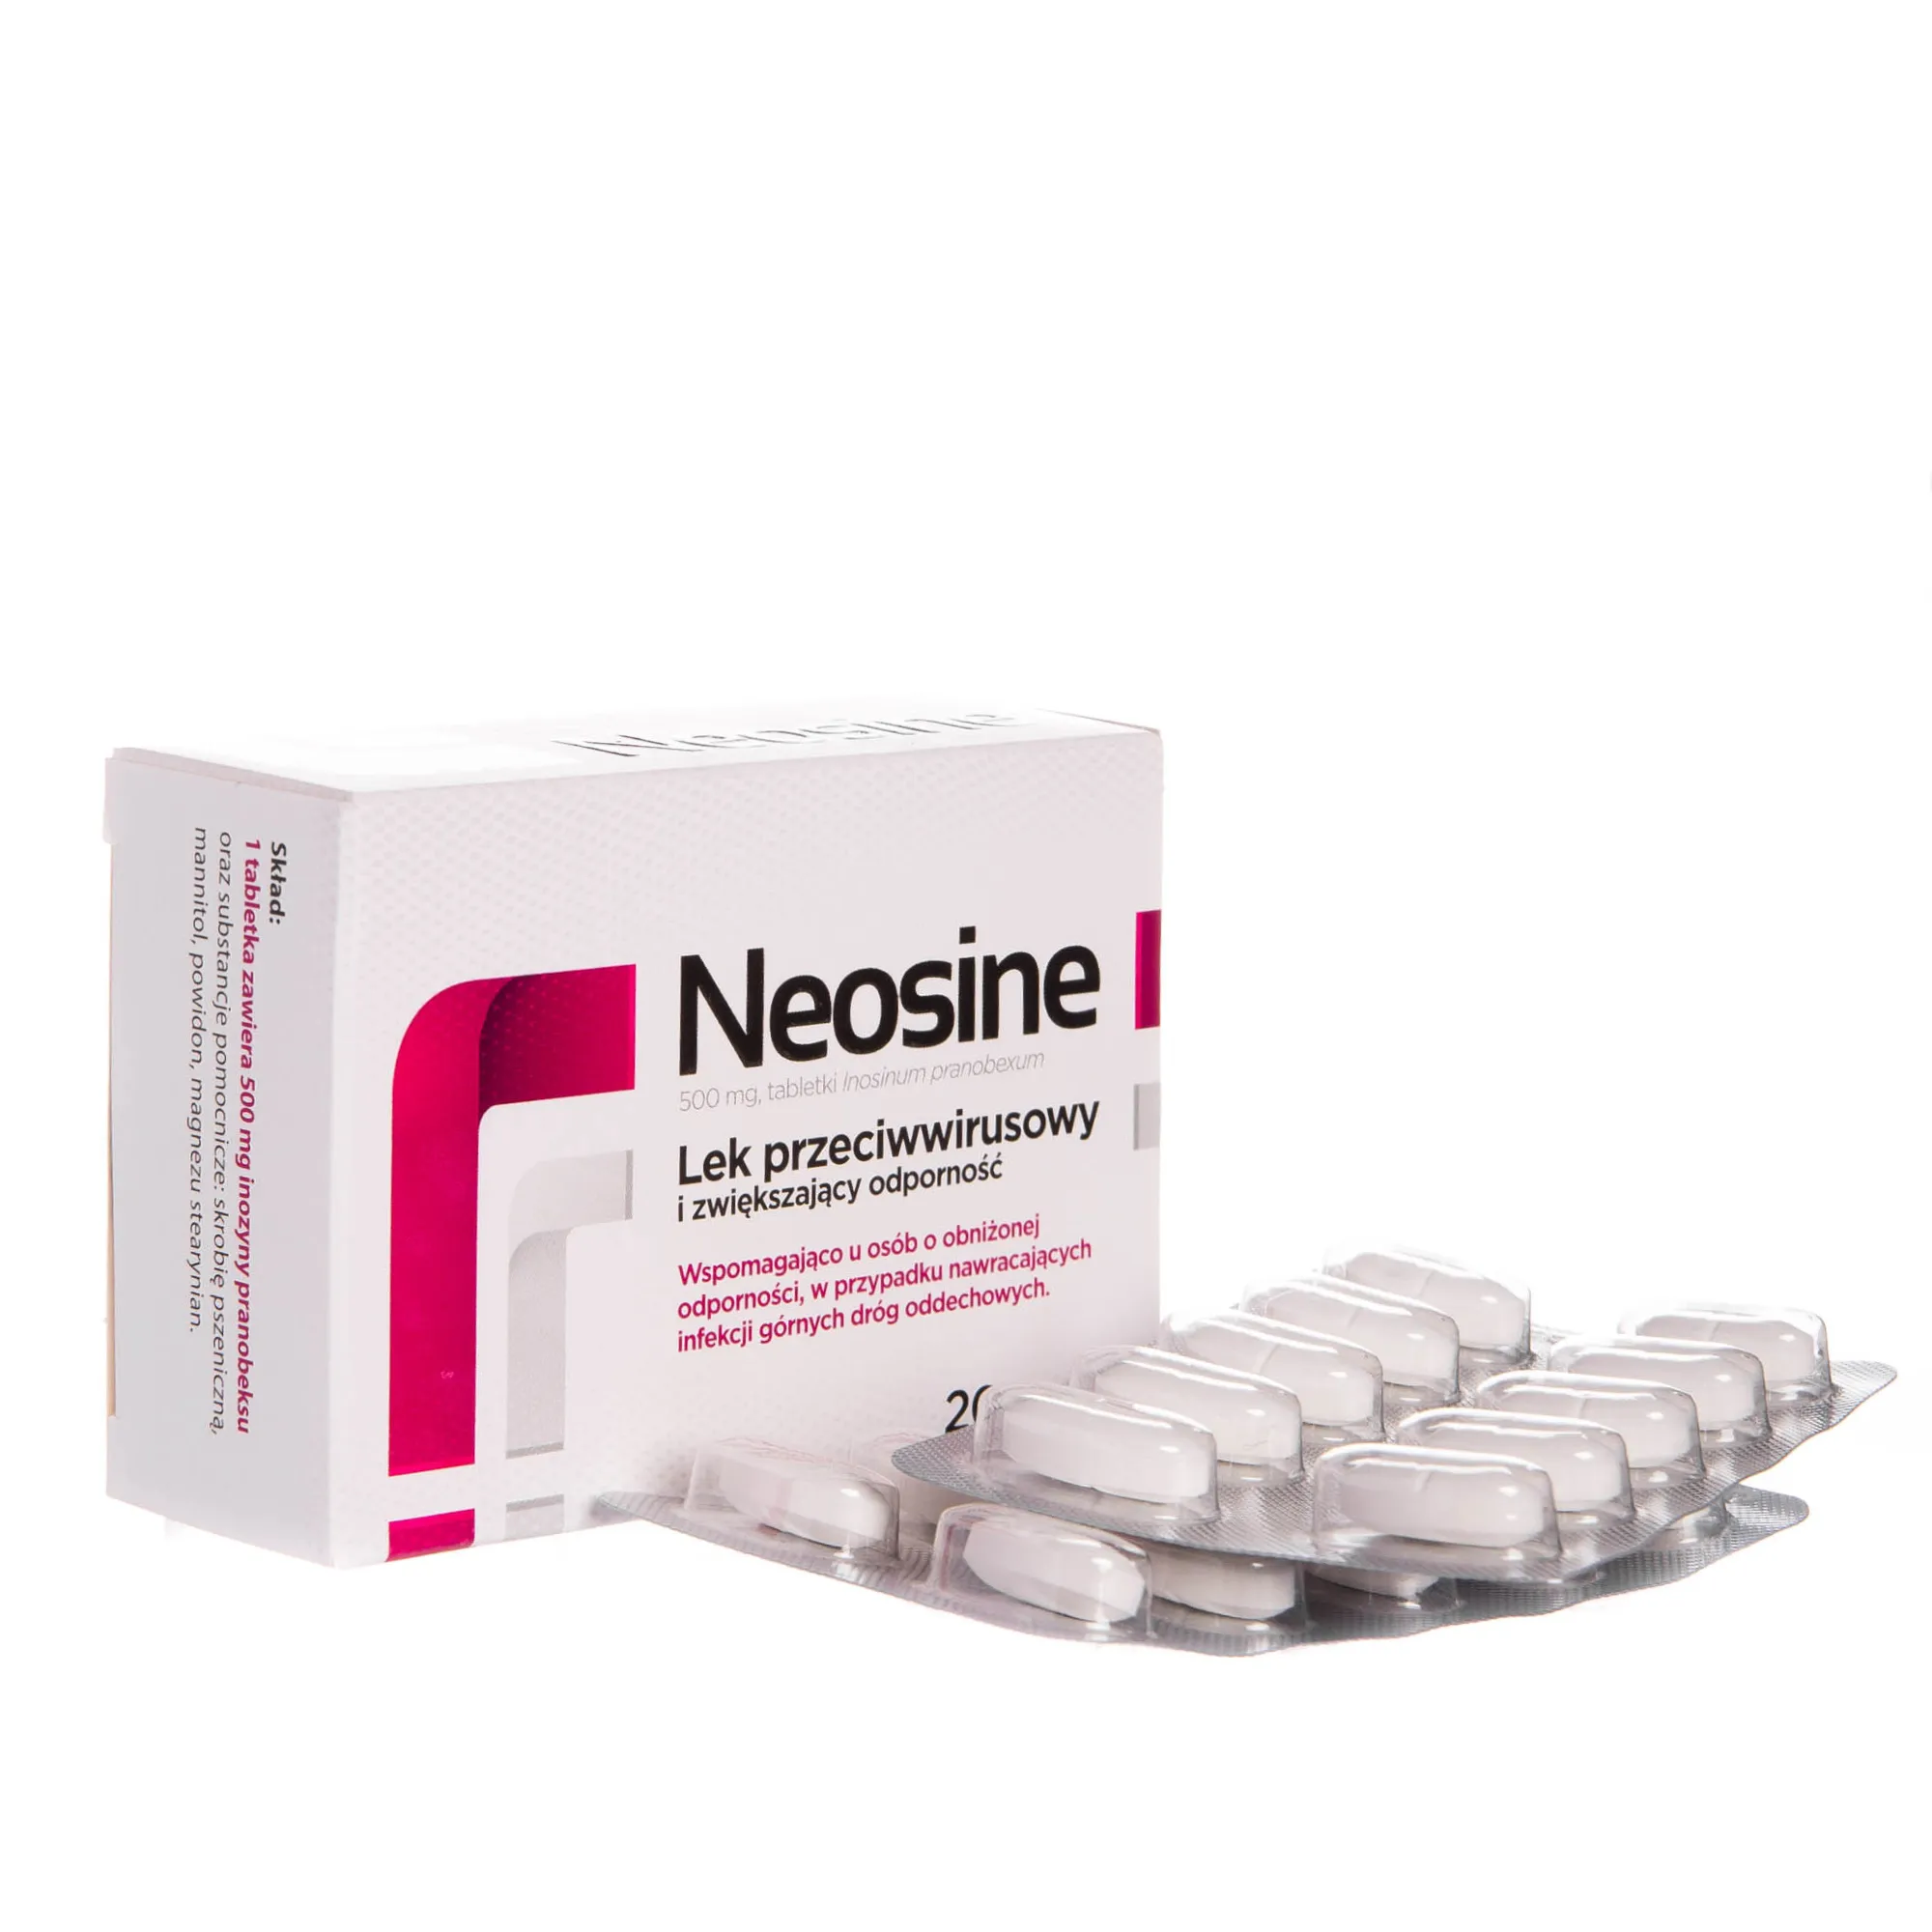 Neosine, 500 mg, tabletki Inosinum pranobexum, lek przeciwwirusowy, 20 tabletek